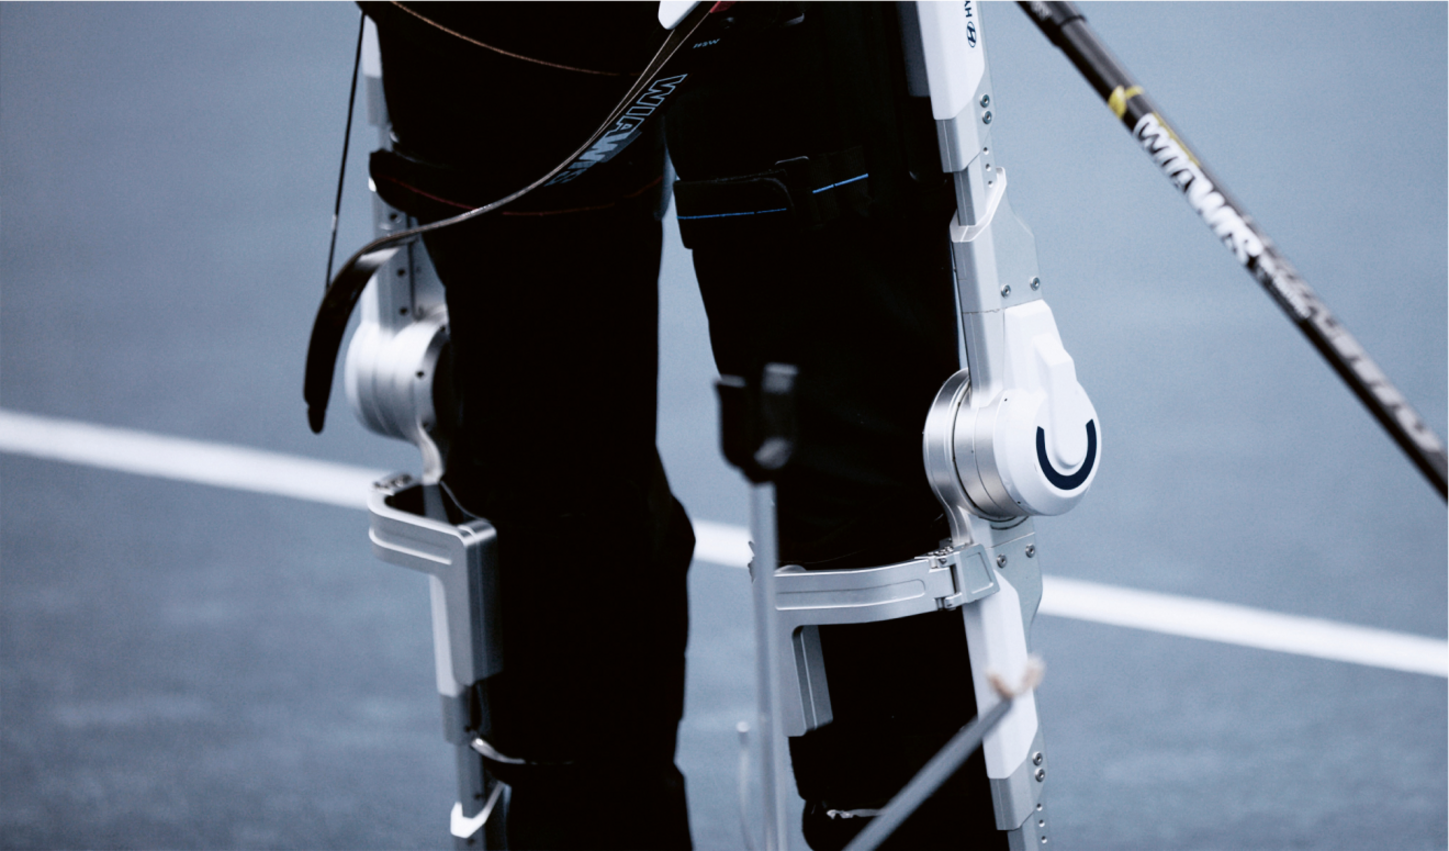 Menschen mit Wirbelsäulenverletzungen können womöglich durch Wearable Robotics im Bereich der Beine unterstützt werden.